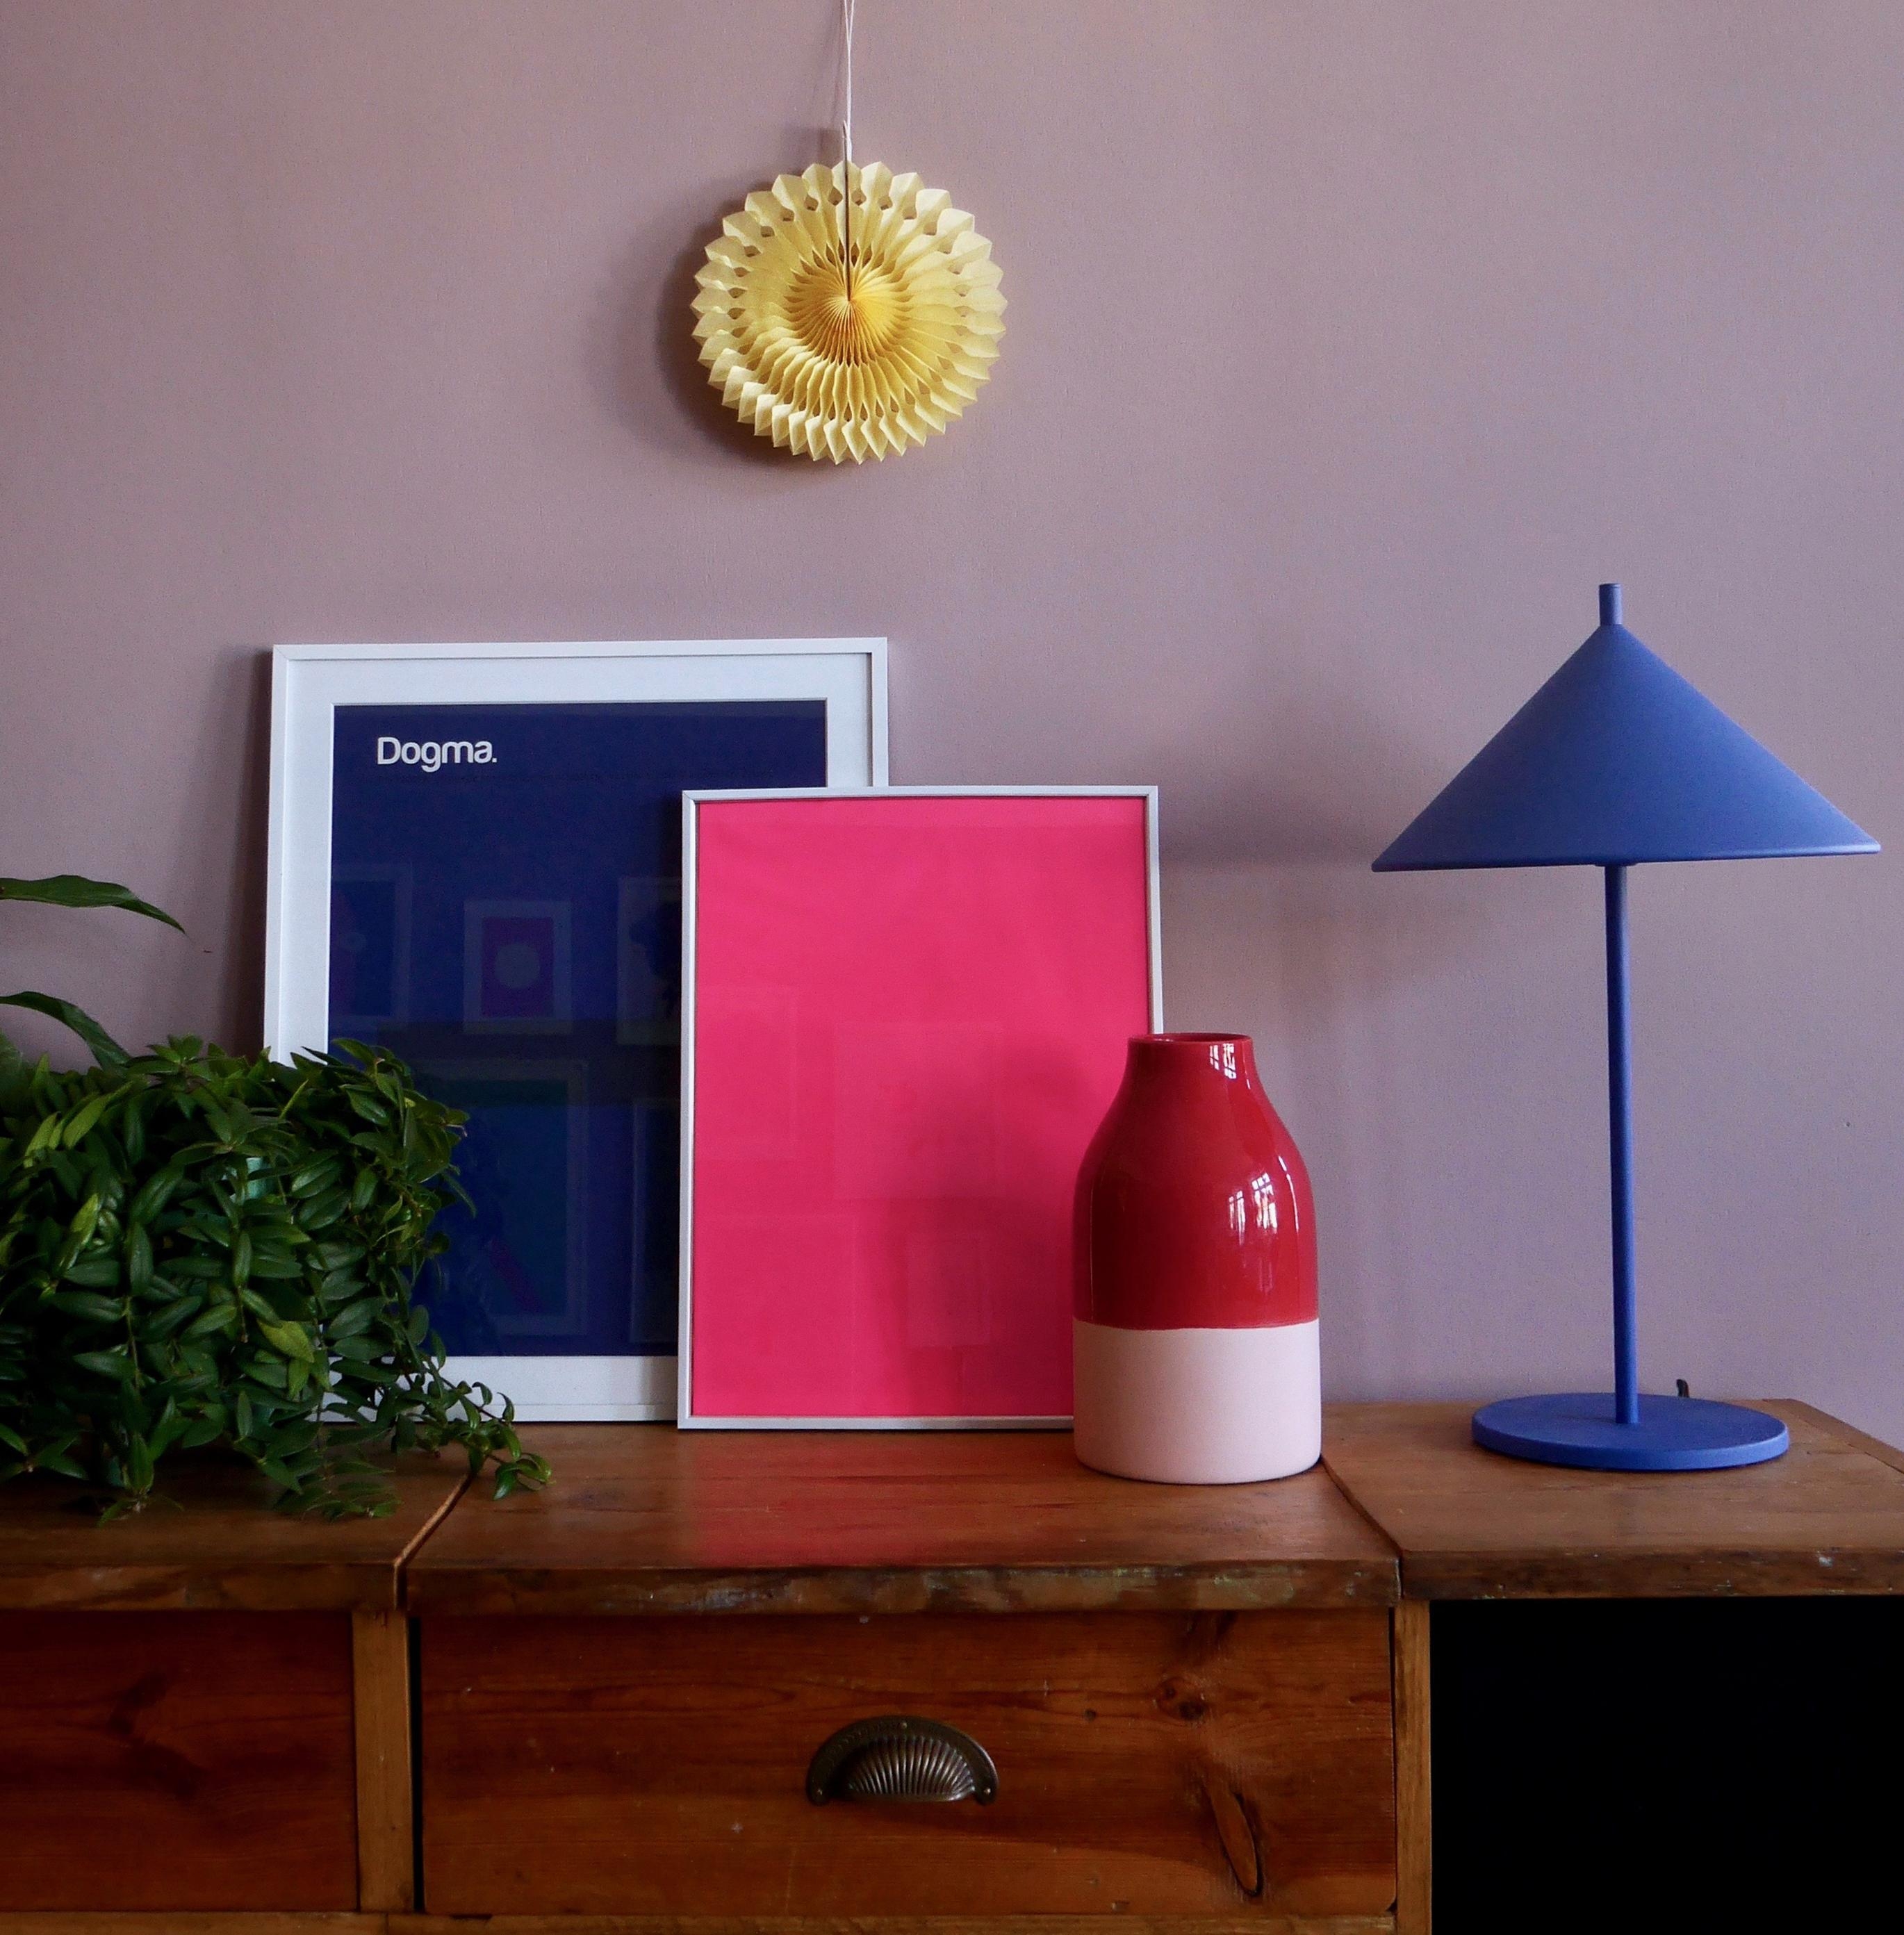 Auf dem Sideboard geht es farbig zu.
#sideboard #wohnzimmer #wohnzimmerdeko #vase #bunteszuhause #farbenfroh #bunt 